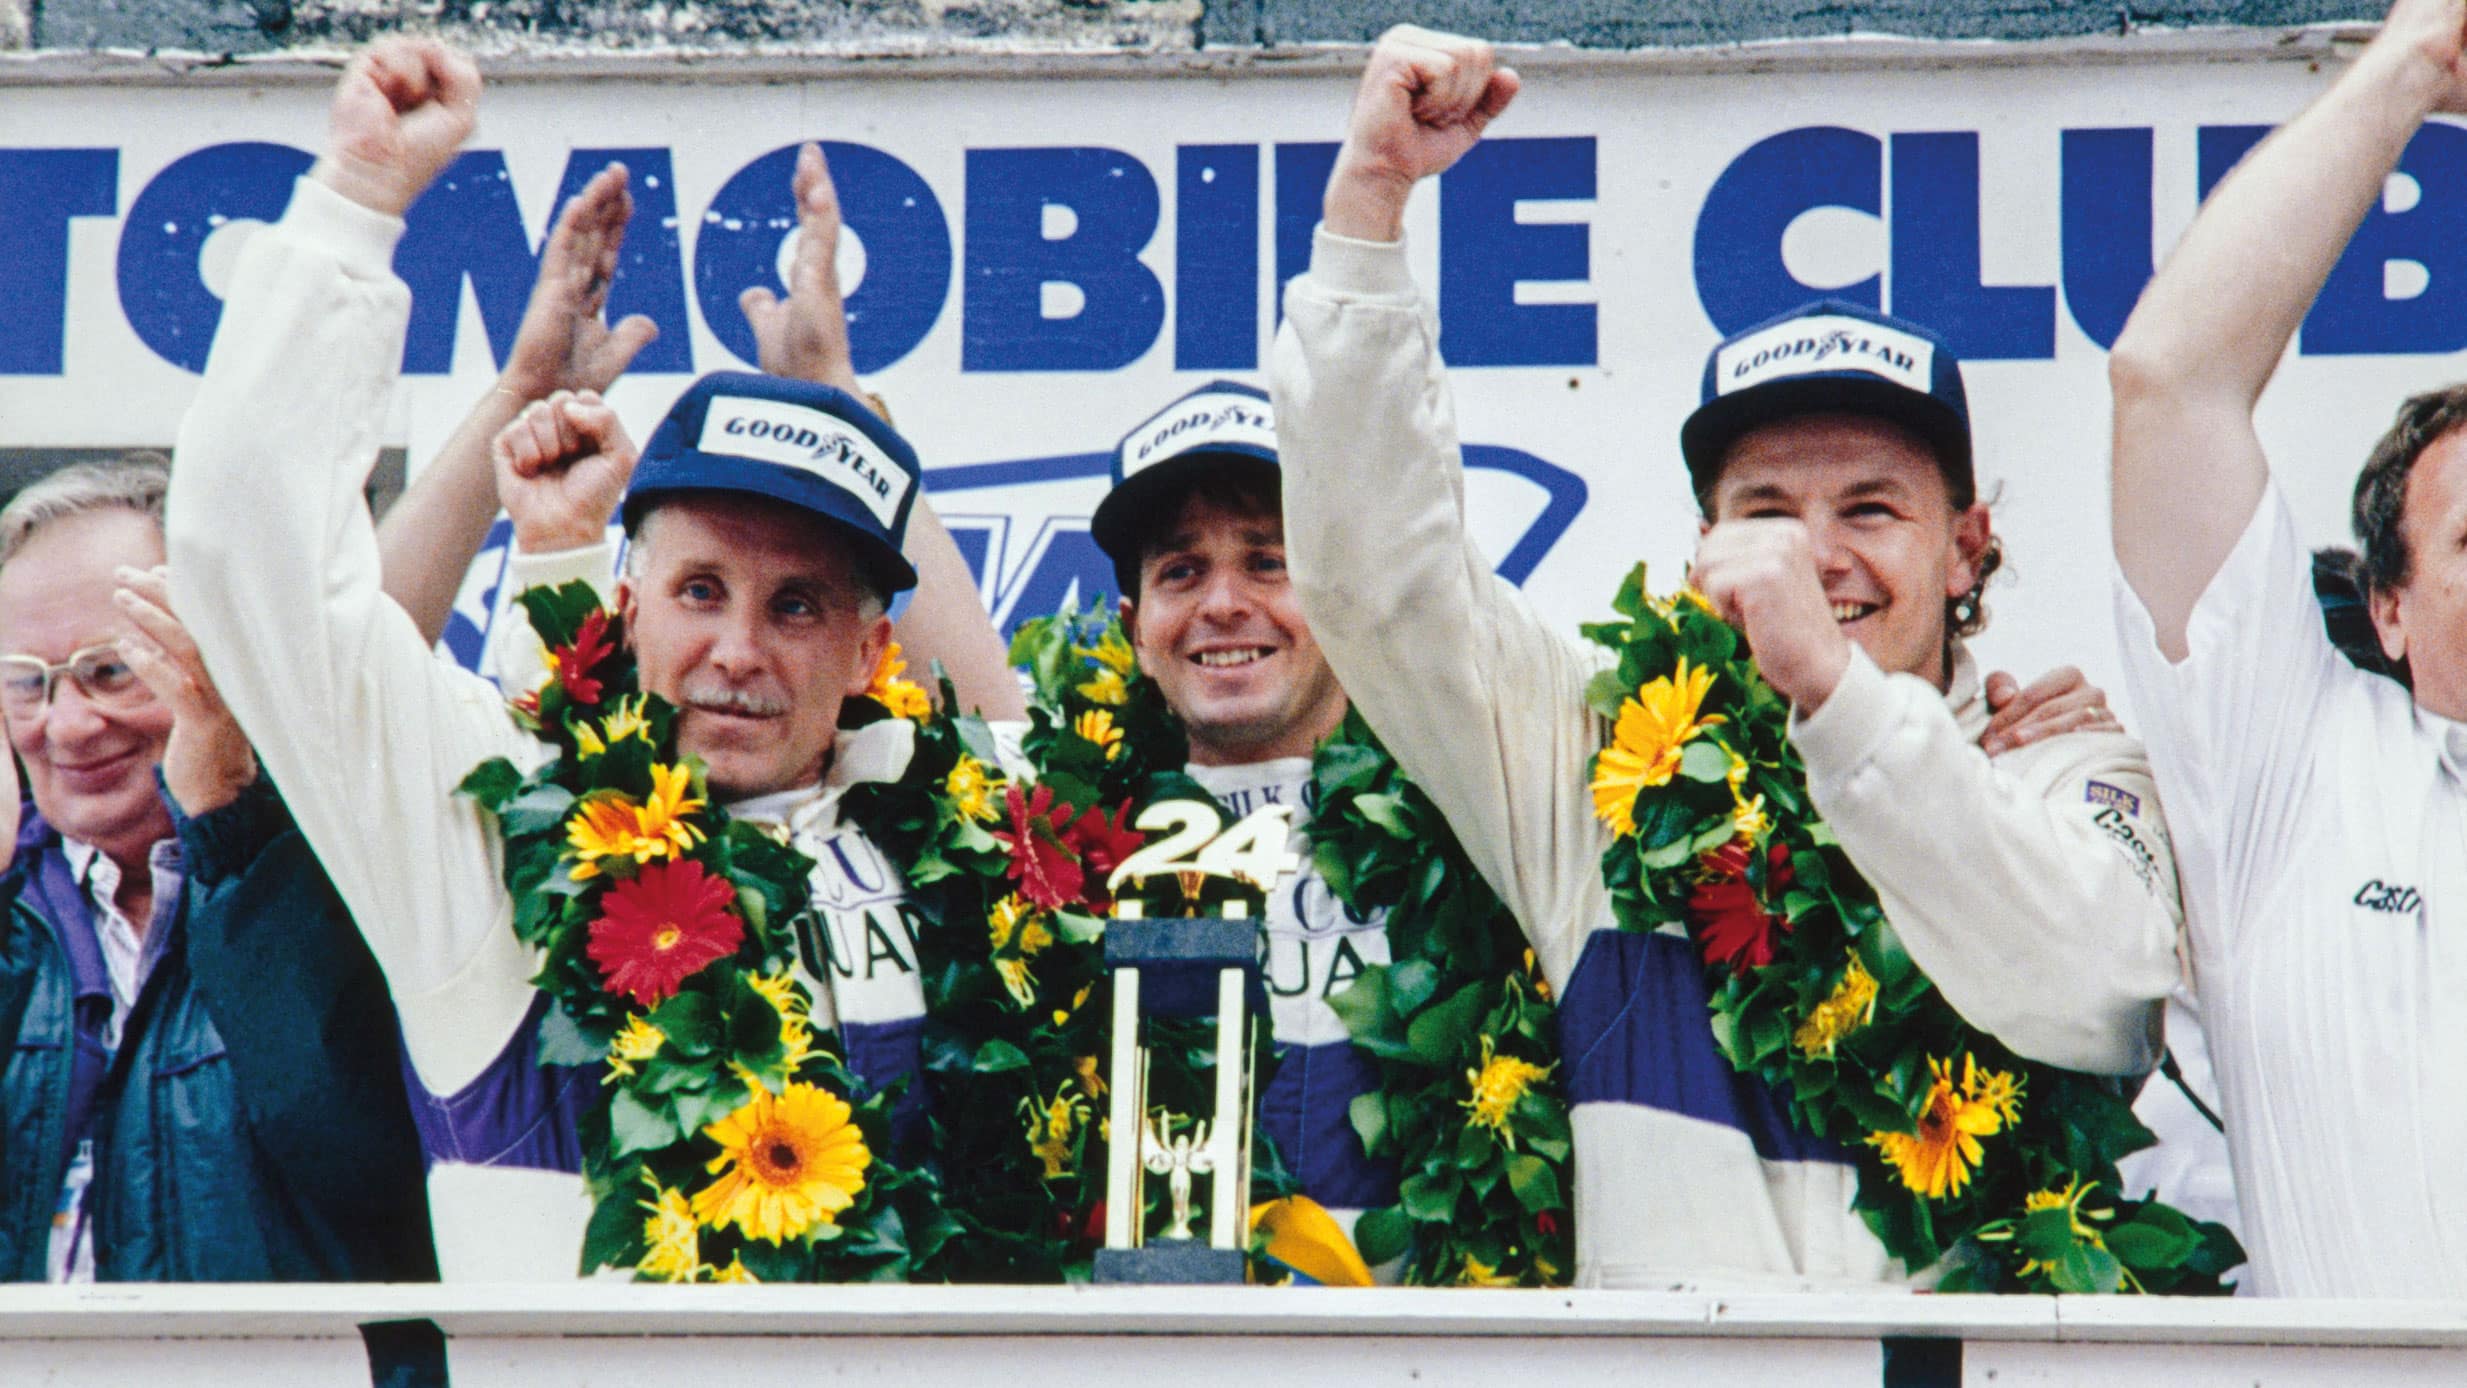 Martin Brundell celebrating victory at Le Mans